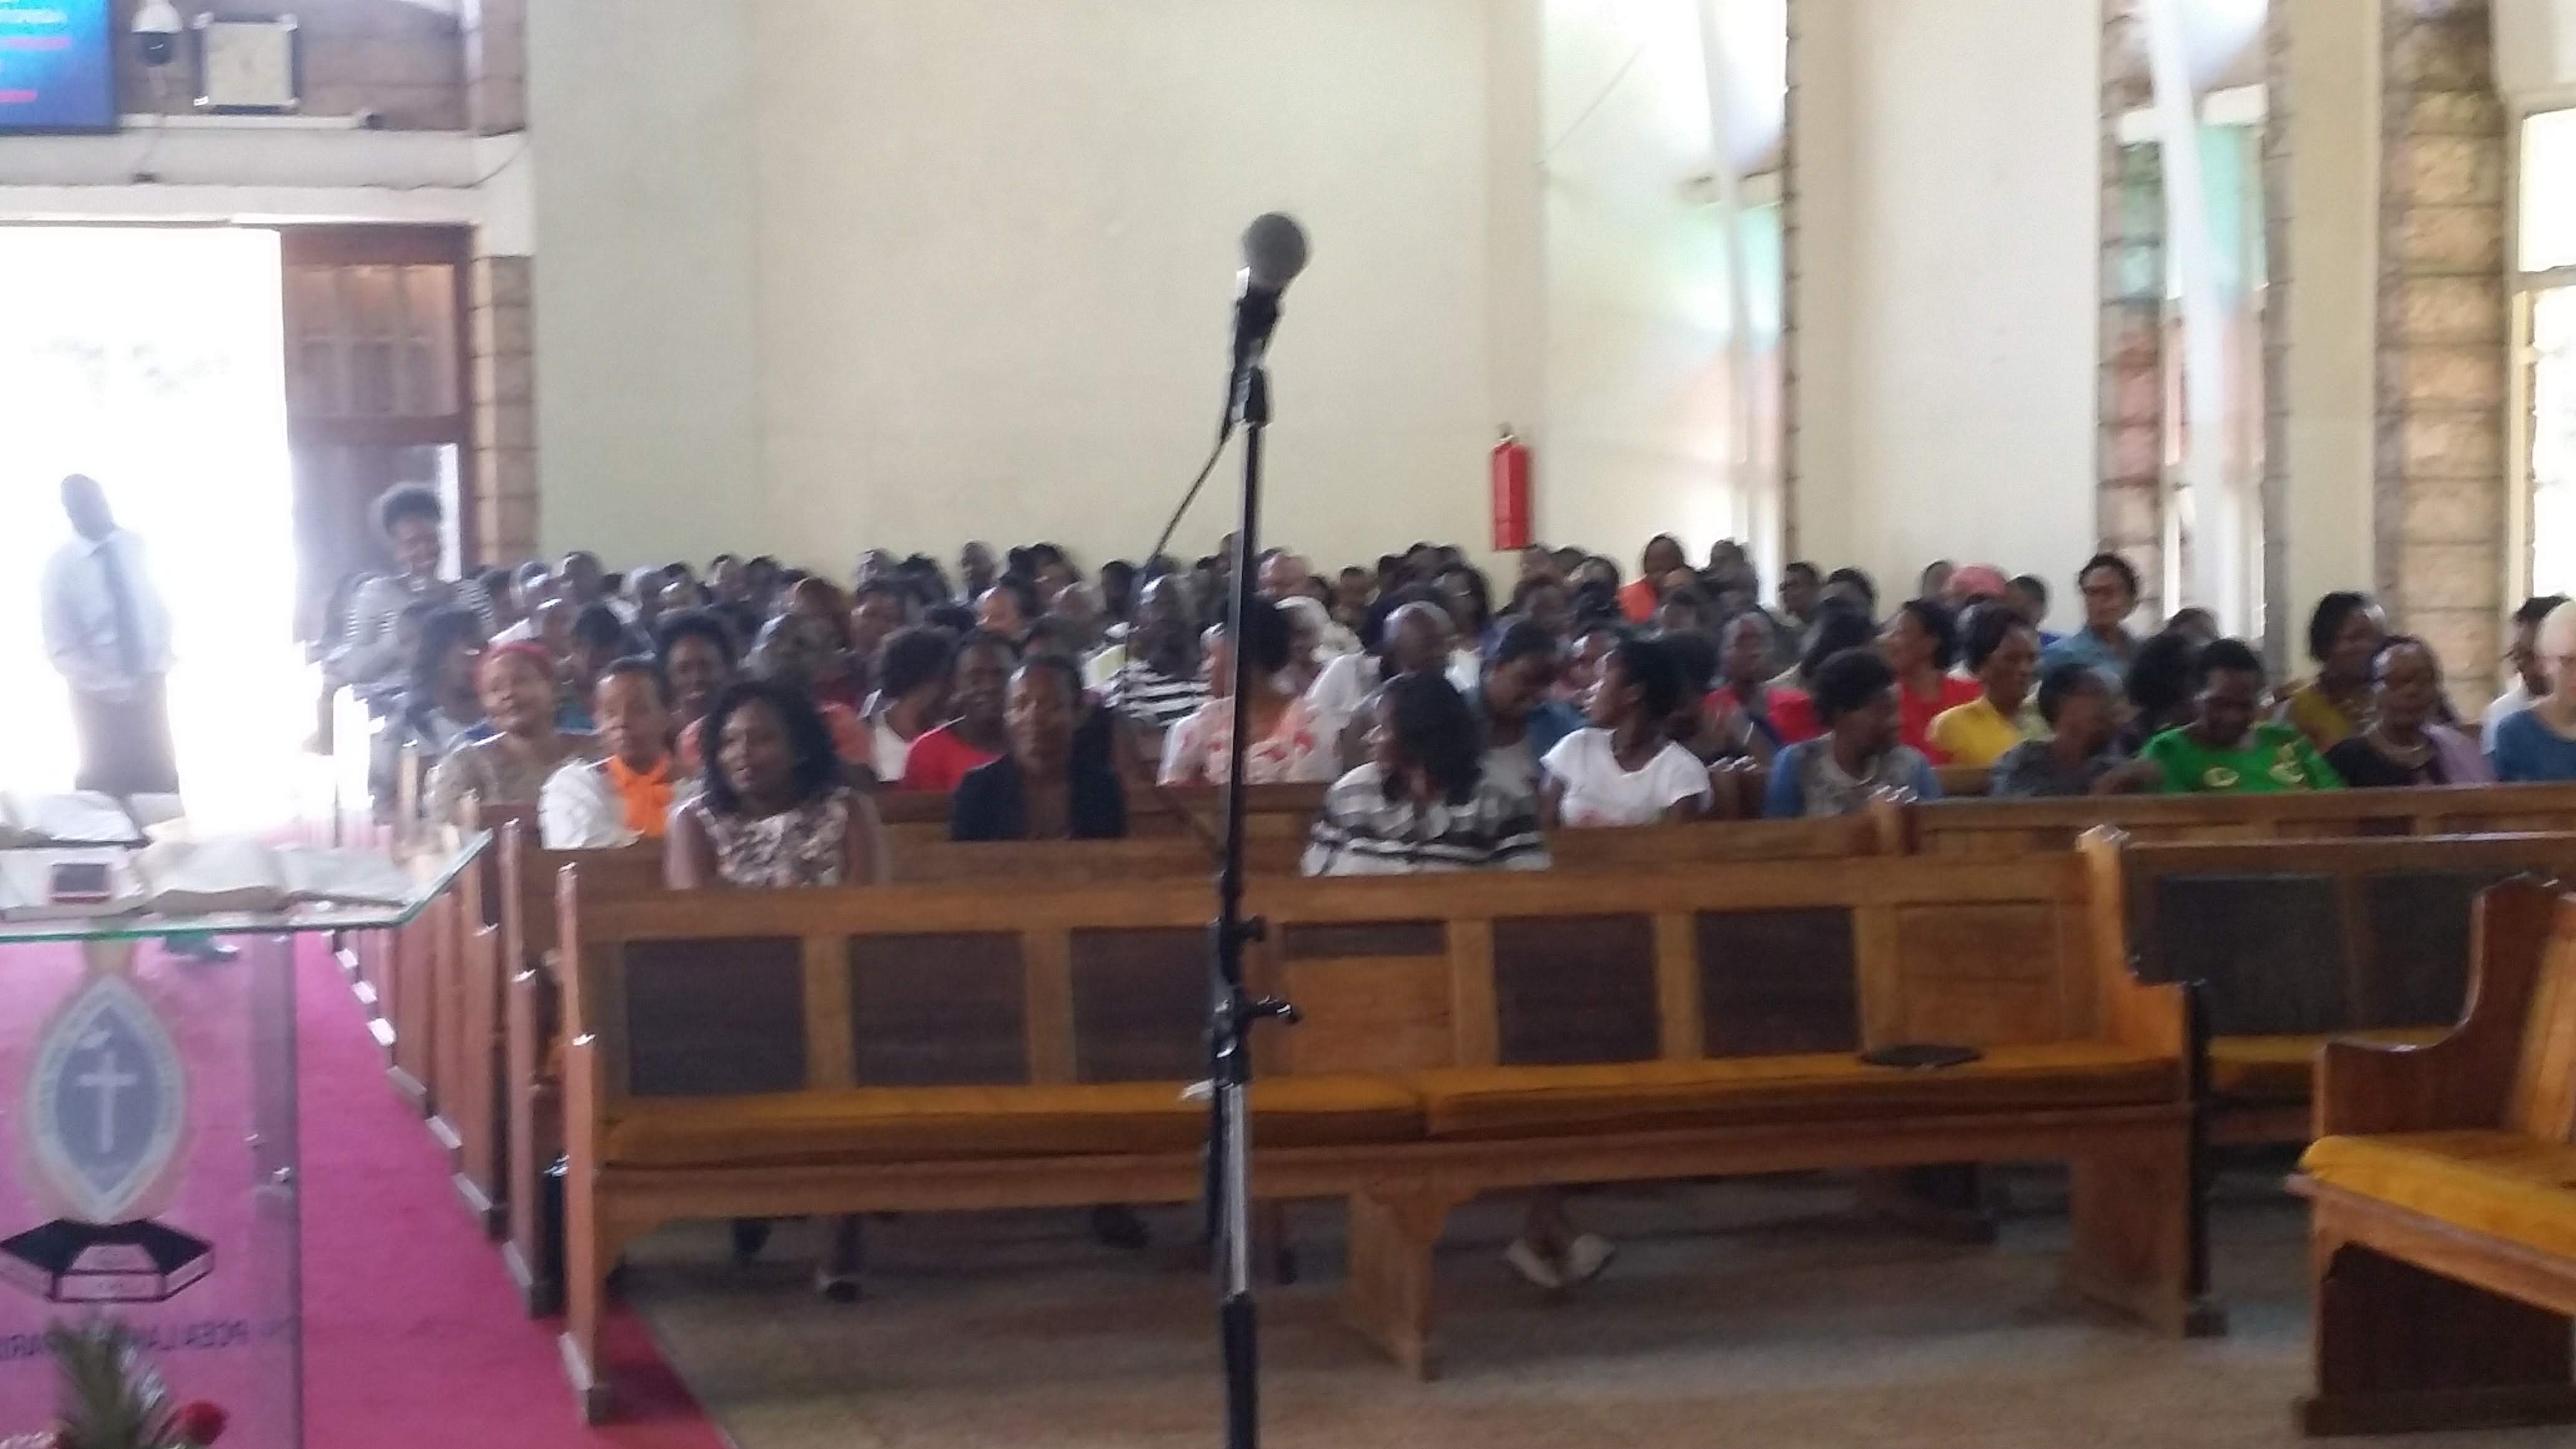 Worship service at Presbyterian Church of East Africa Lang’ata Parish, in Nairobi, Kenya. Photo by Paula Cooper.